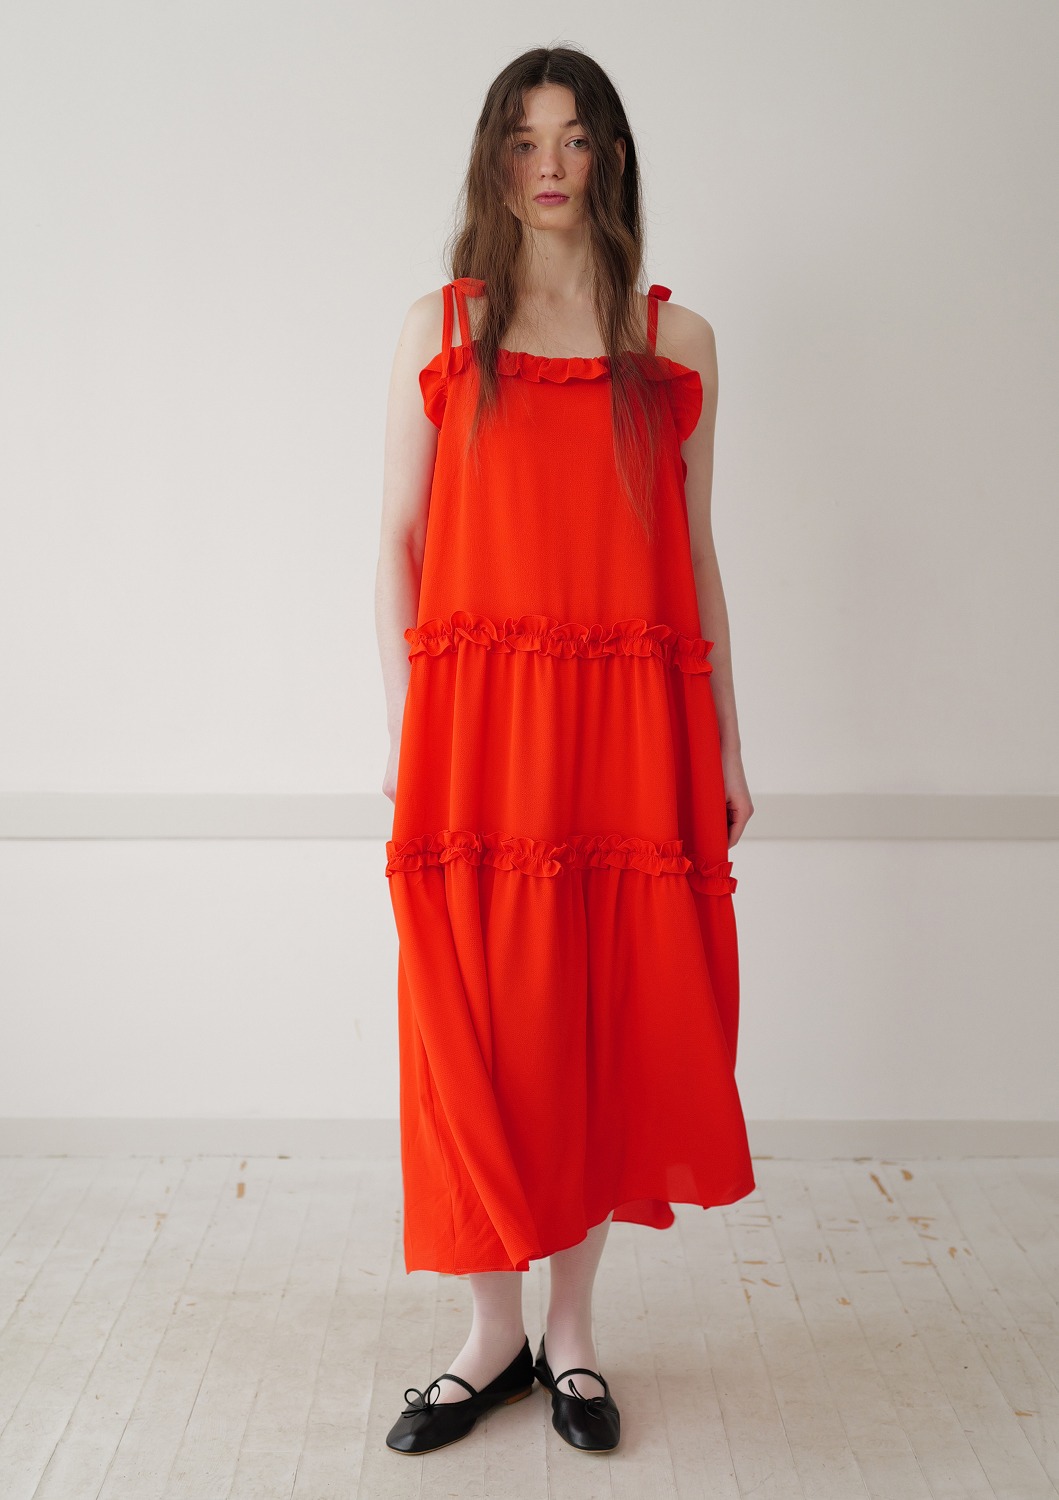 Mused Ruffle Sleeveless Dress - Orange Red